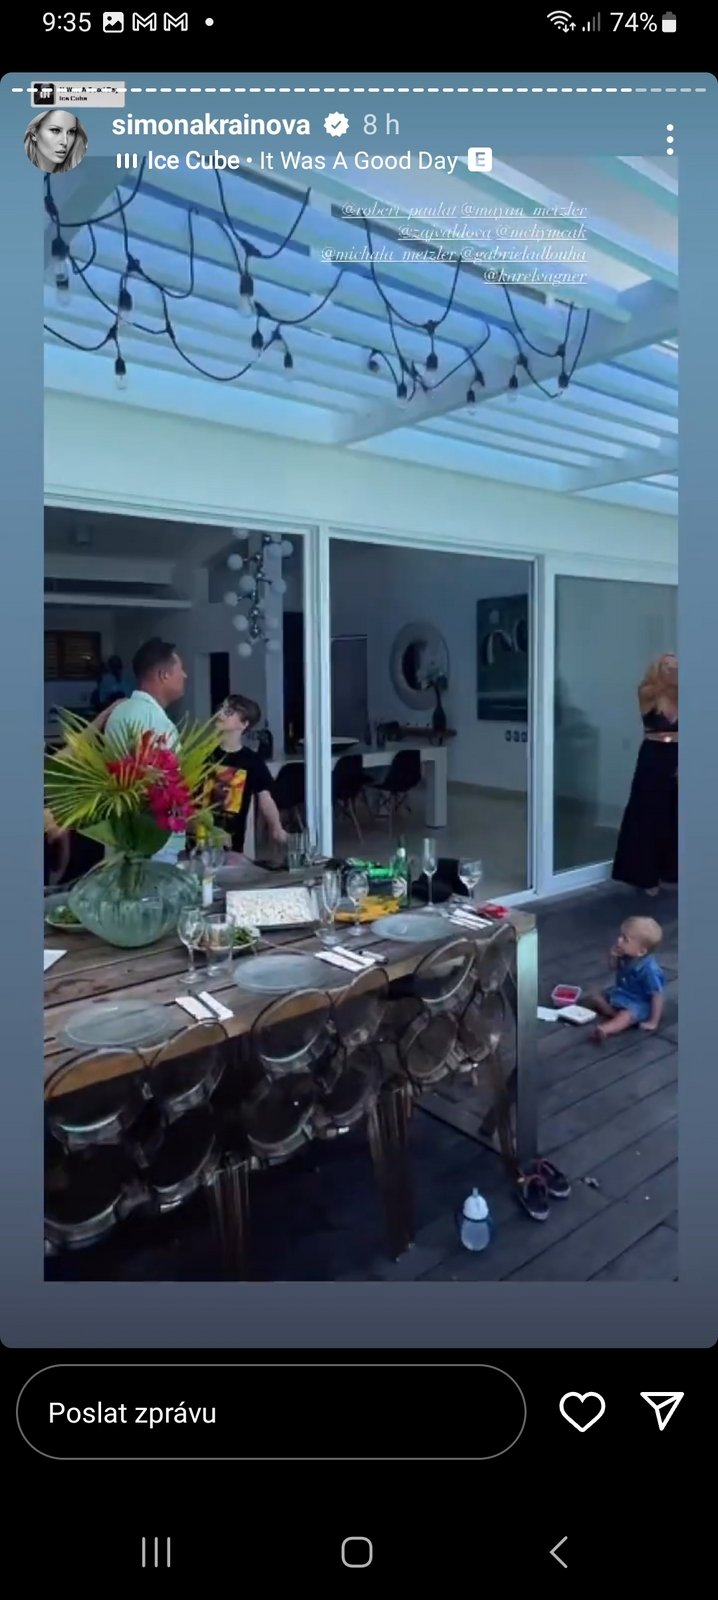 Velkolepou oslavu 50. narozenin uspořádala Simona Krainová ve svém novém karibském domě.